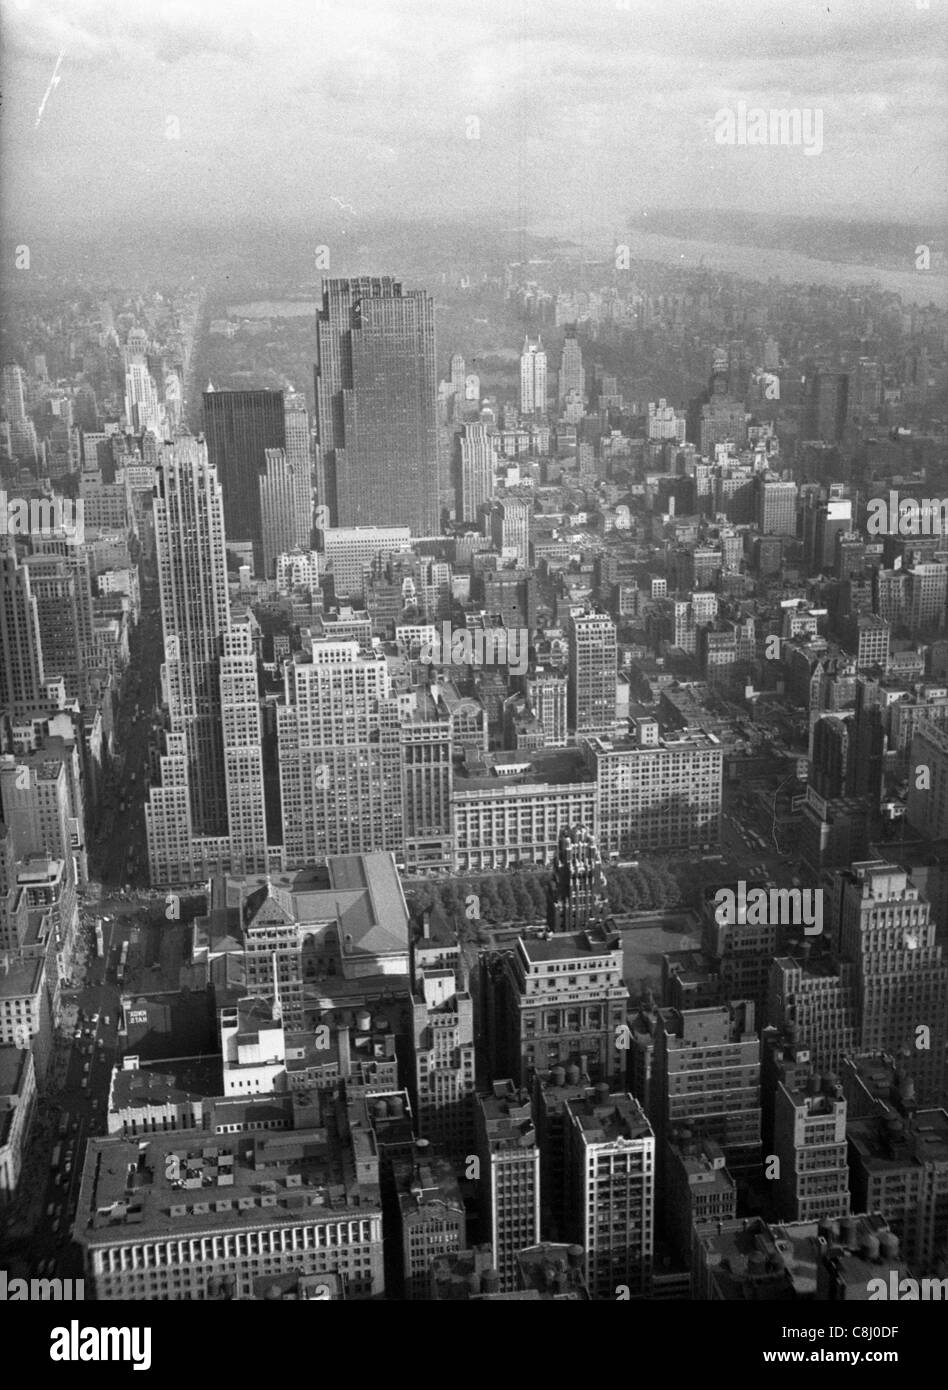 New York City von Empire State Building im August Stadtbild 1948 Schwarz-Weiß-Ansicht Stadtgebiet 1940 Nachkriegszeit manhattan Architektur Amerika gesehen Stockfoto